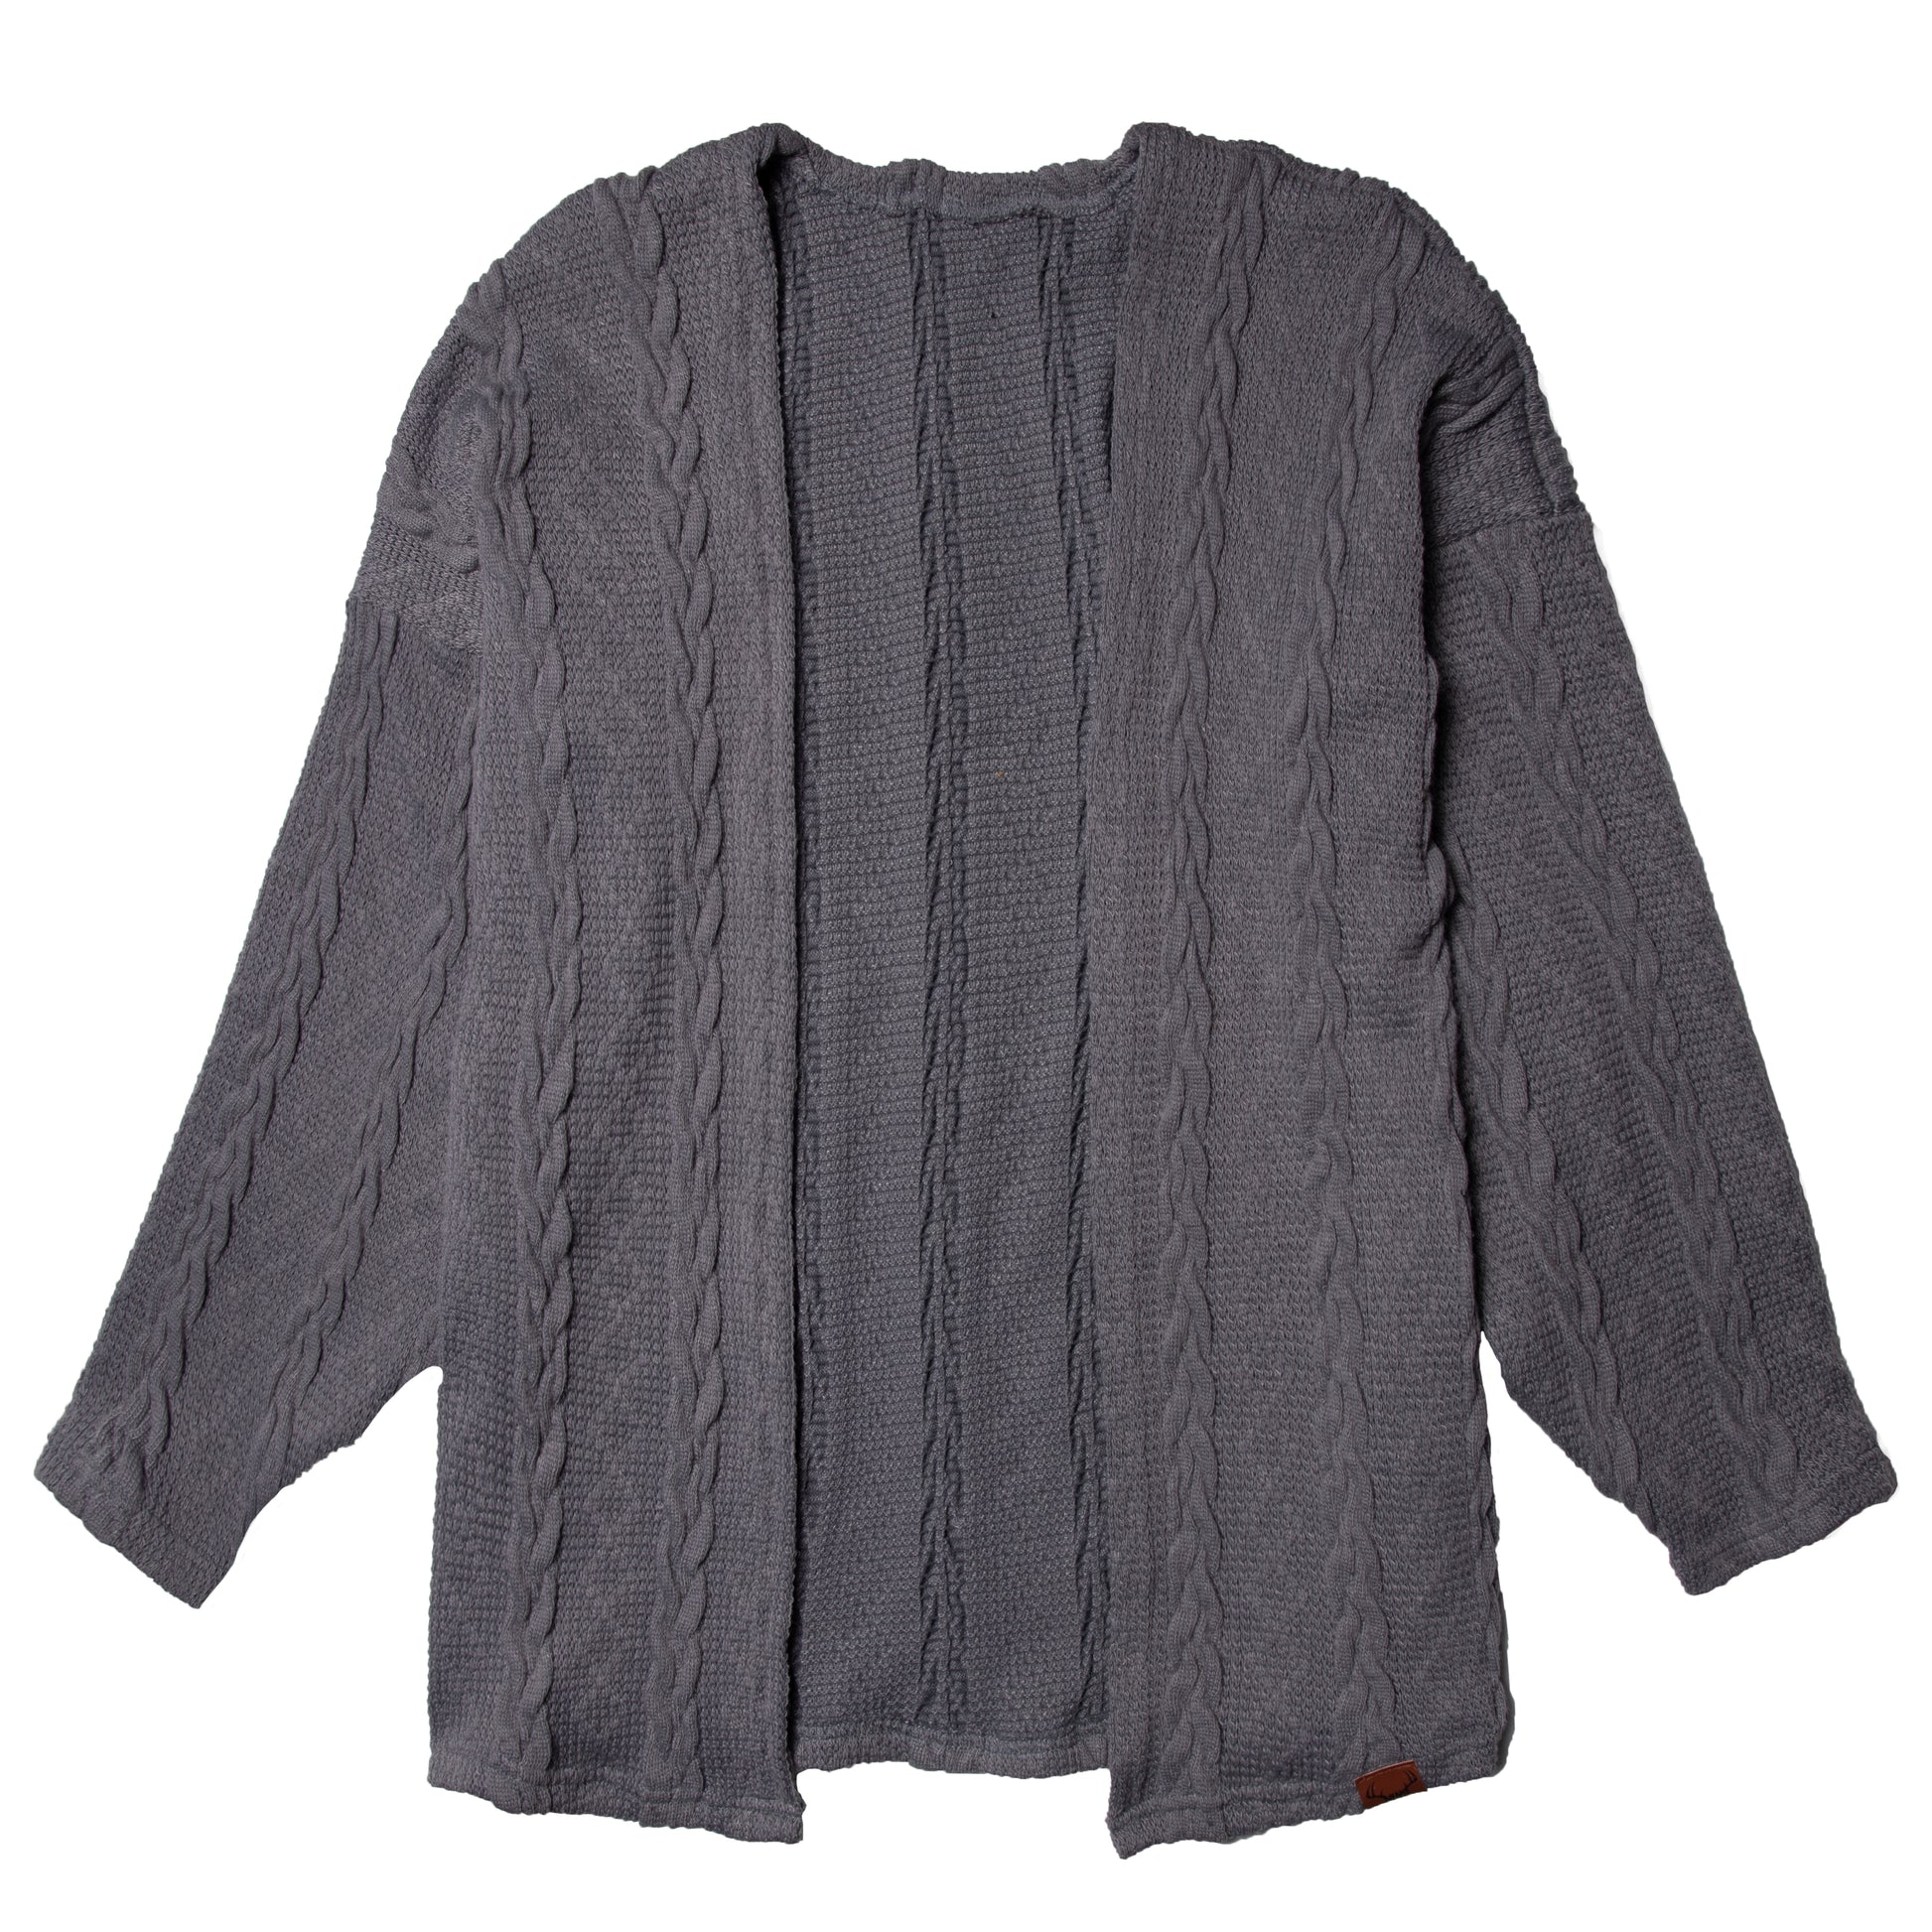 Veste grise en tricot, vêtement pour femme Nine Clothing jacket gray knitted women